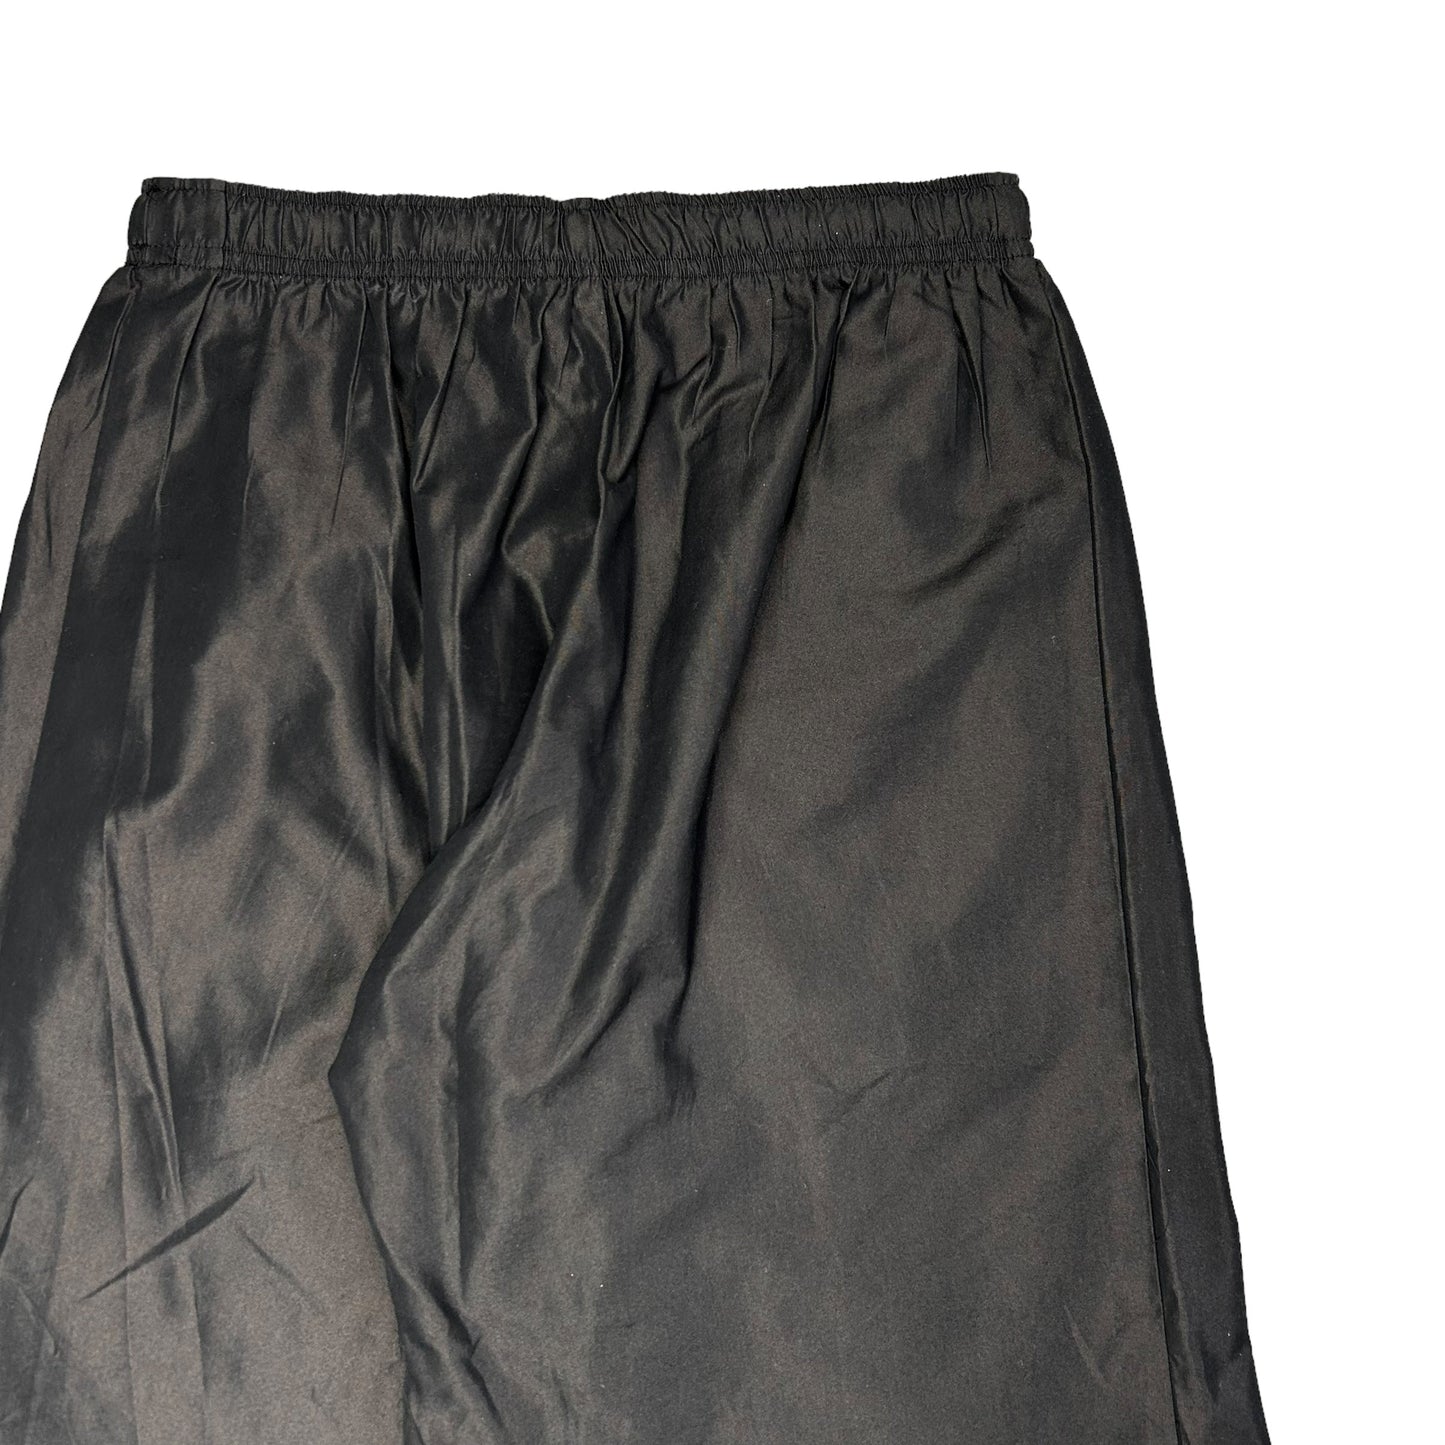 Y‘s Yohji Yamamoto Waist Pocket Shorts